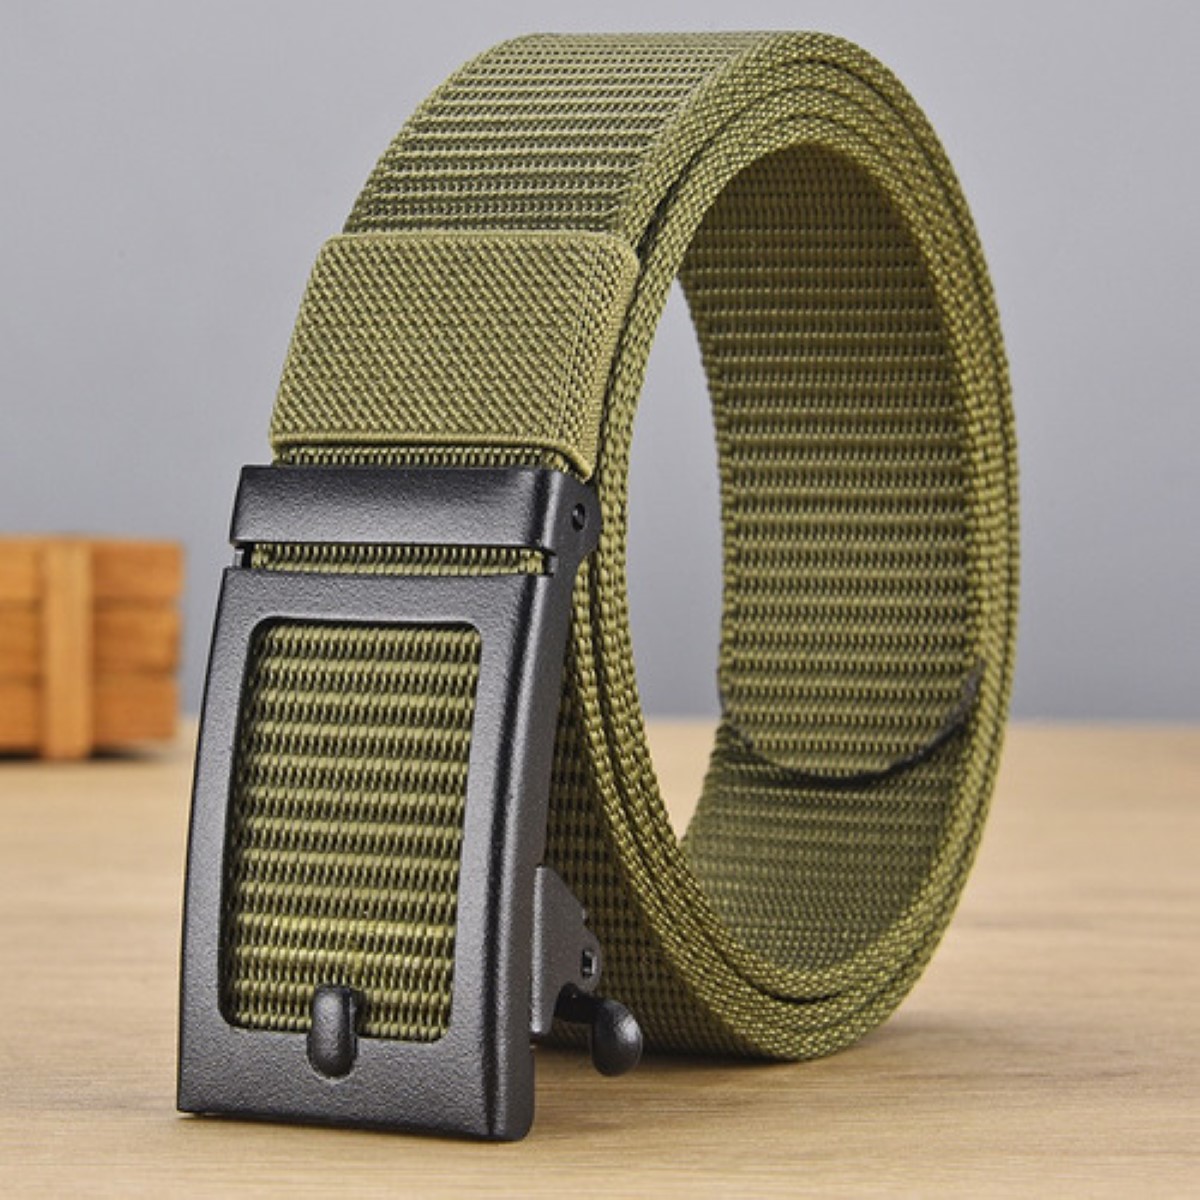 Cinturones para hombre, cinturón de trabajo de nailon, cinturón ajustable,  cinturón de trabajo para hombre, tecnología avanzada